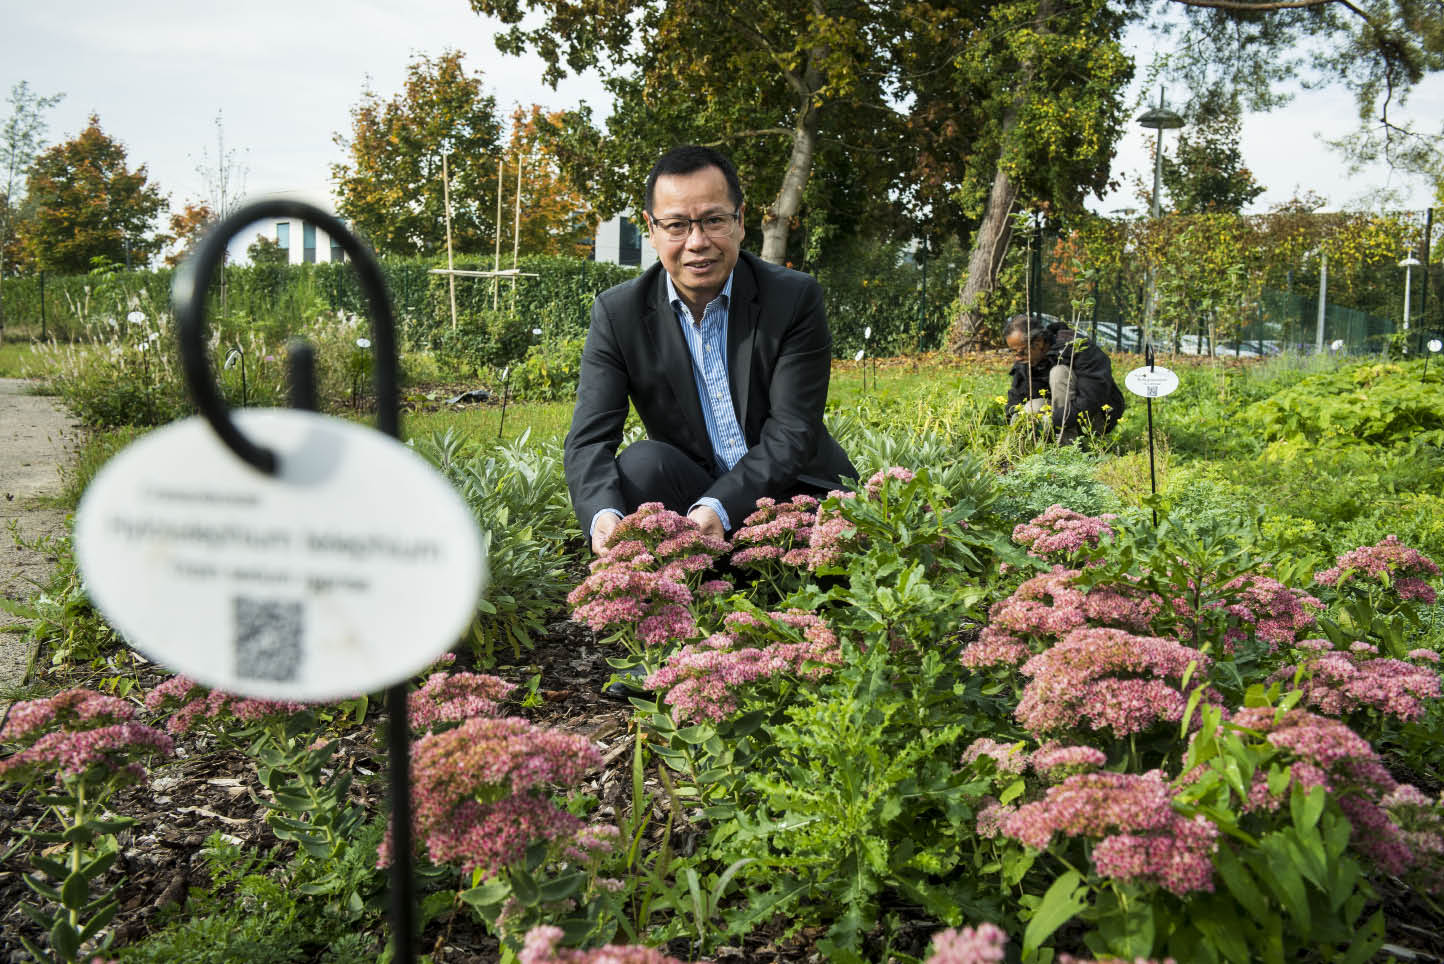 Le Docteur Yulin Jiang cultive son jardin botanique autour de l'usine. © Dorothée Parent